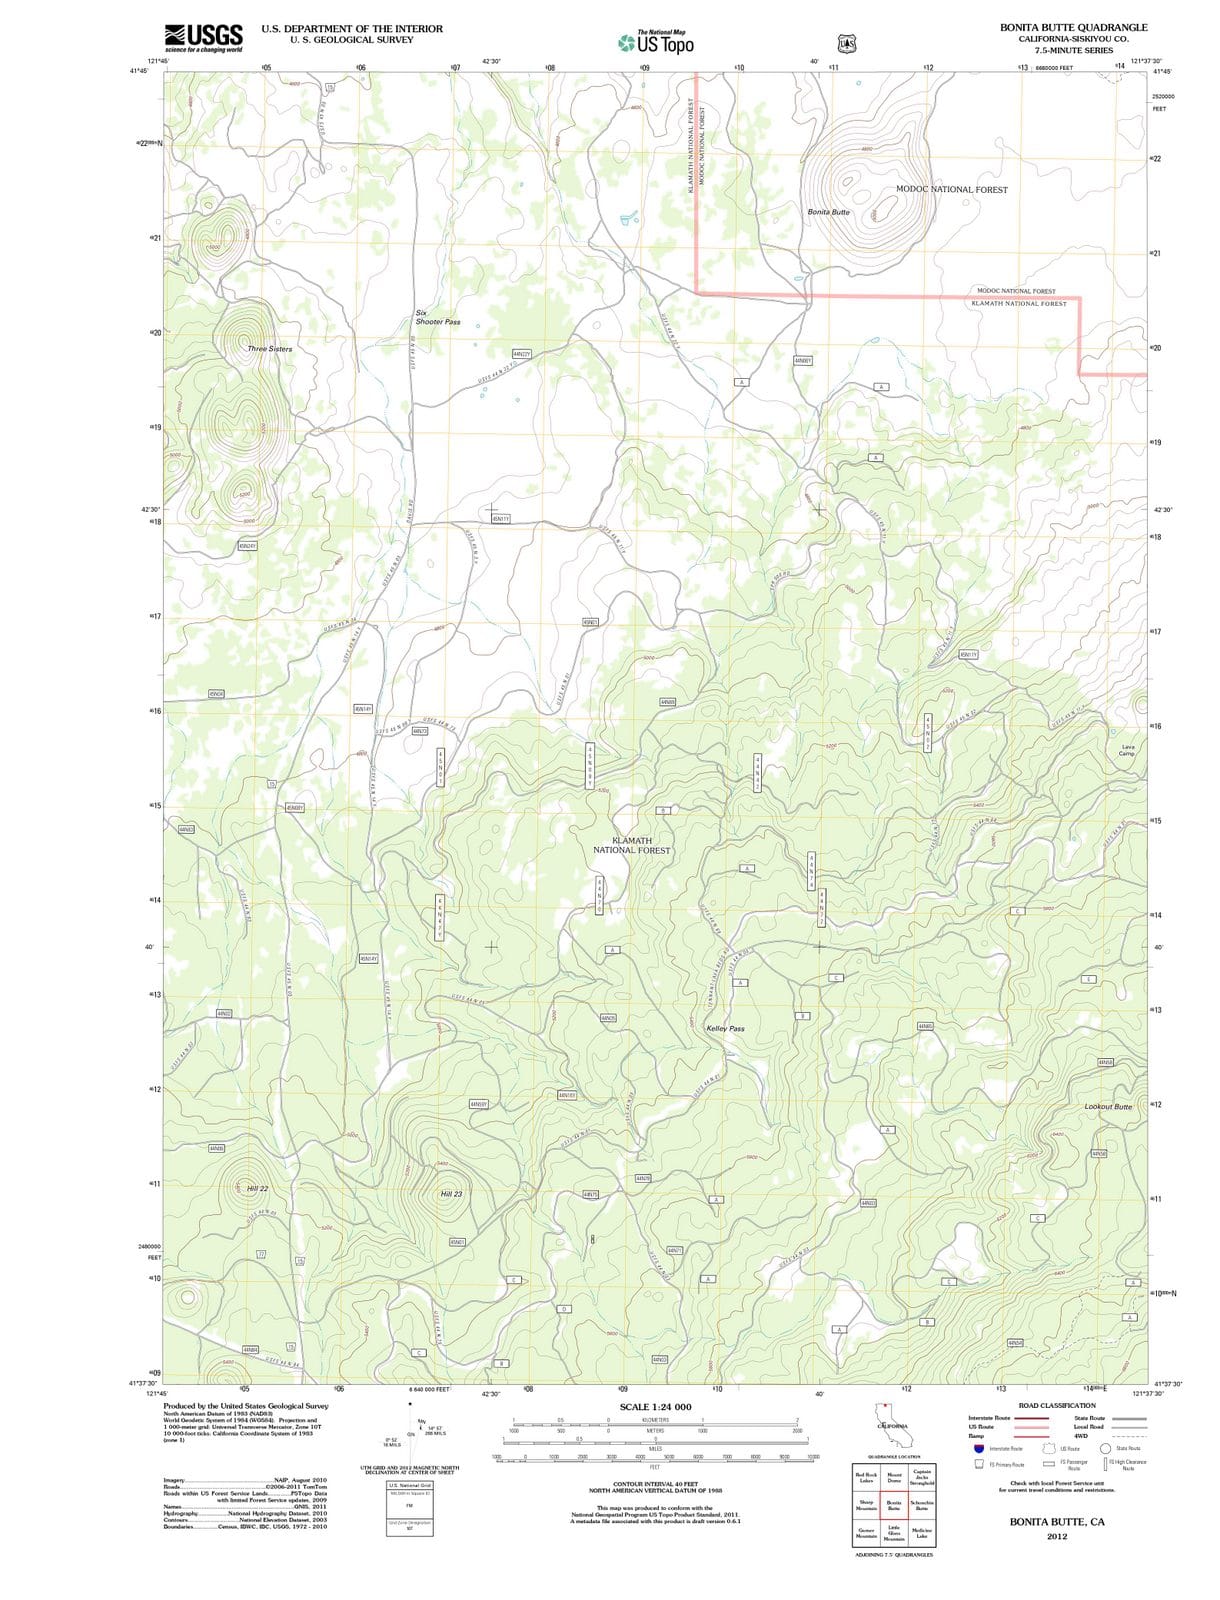 2012 Bonita Butte, CA - California - USGS Topographic Map